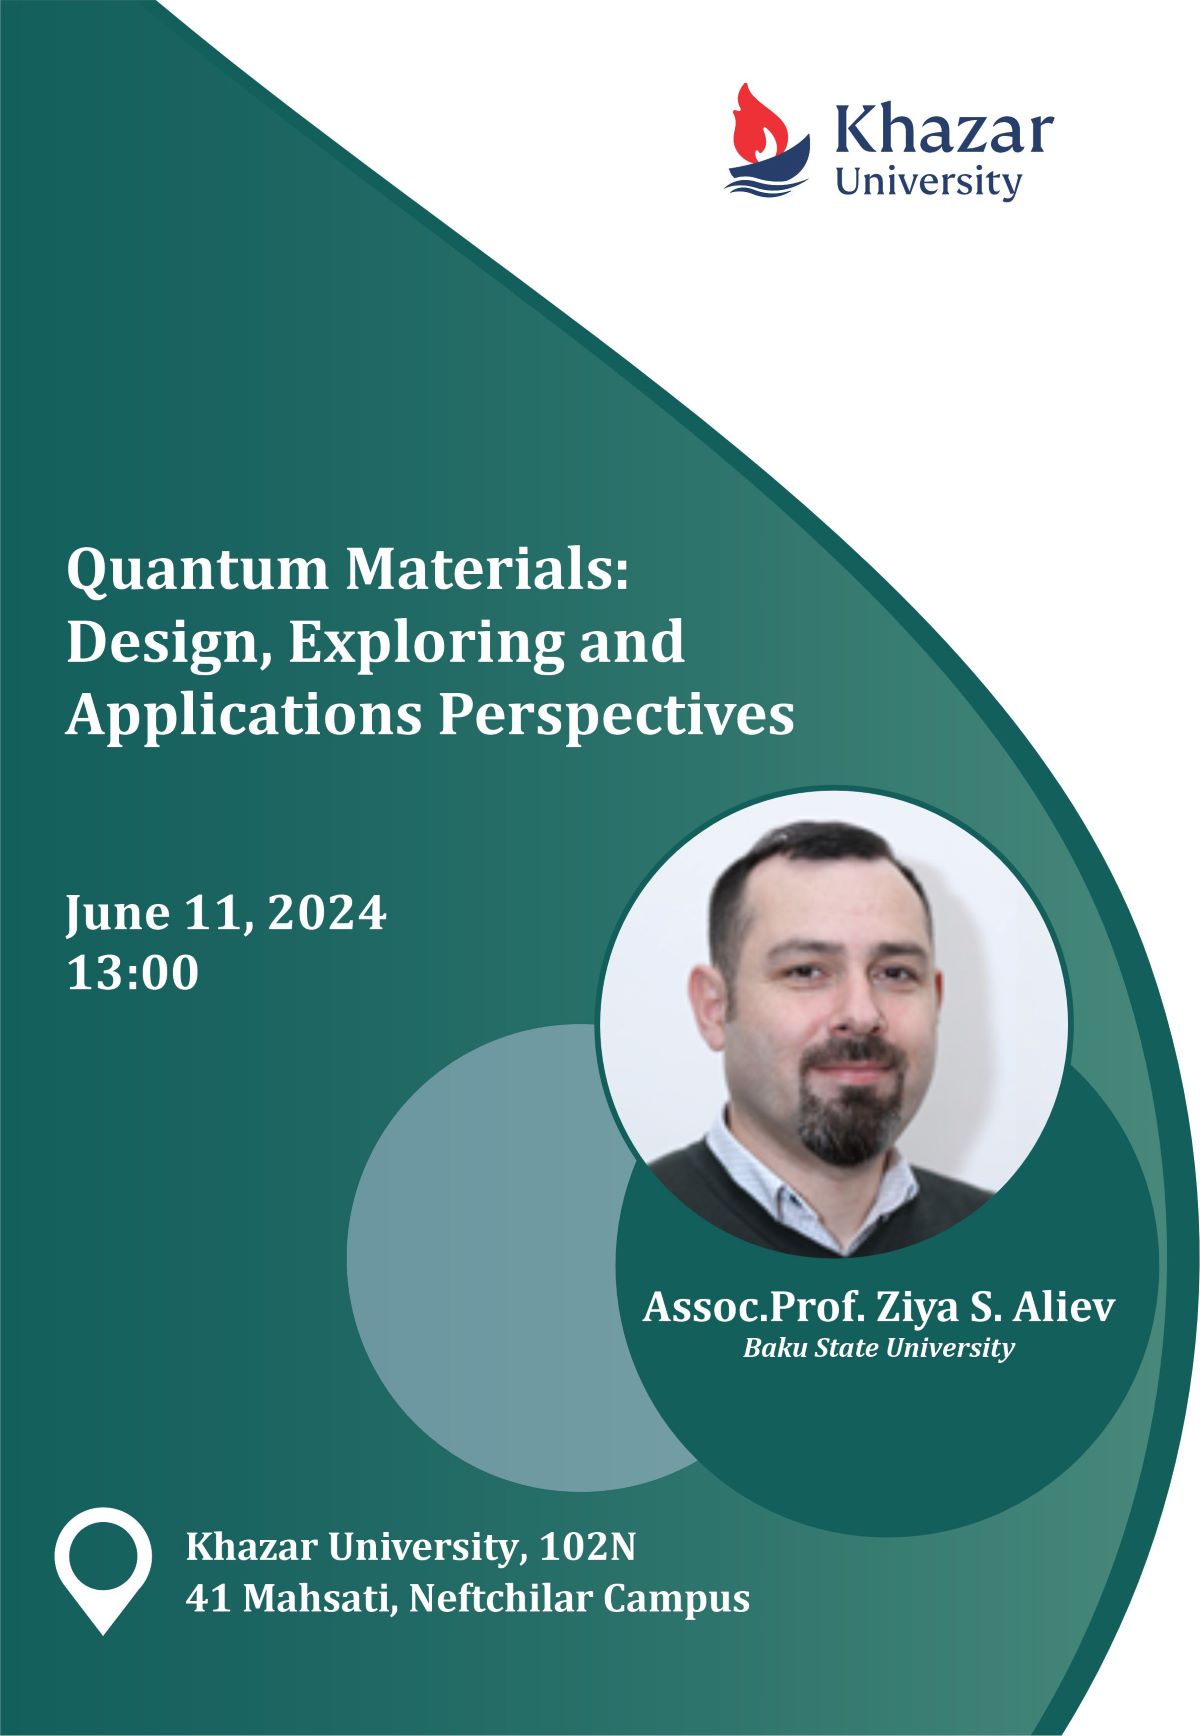 Seminar on "Quantum Materials: Design, Exploring and Applications Perspectives"